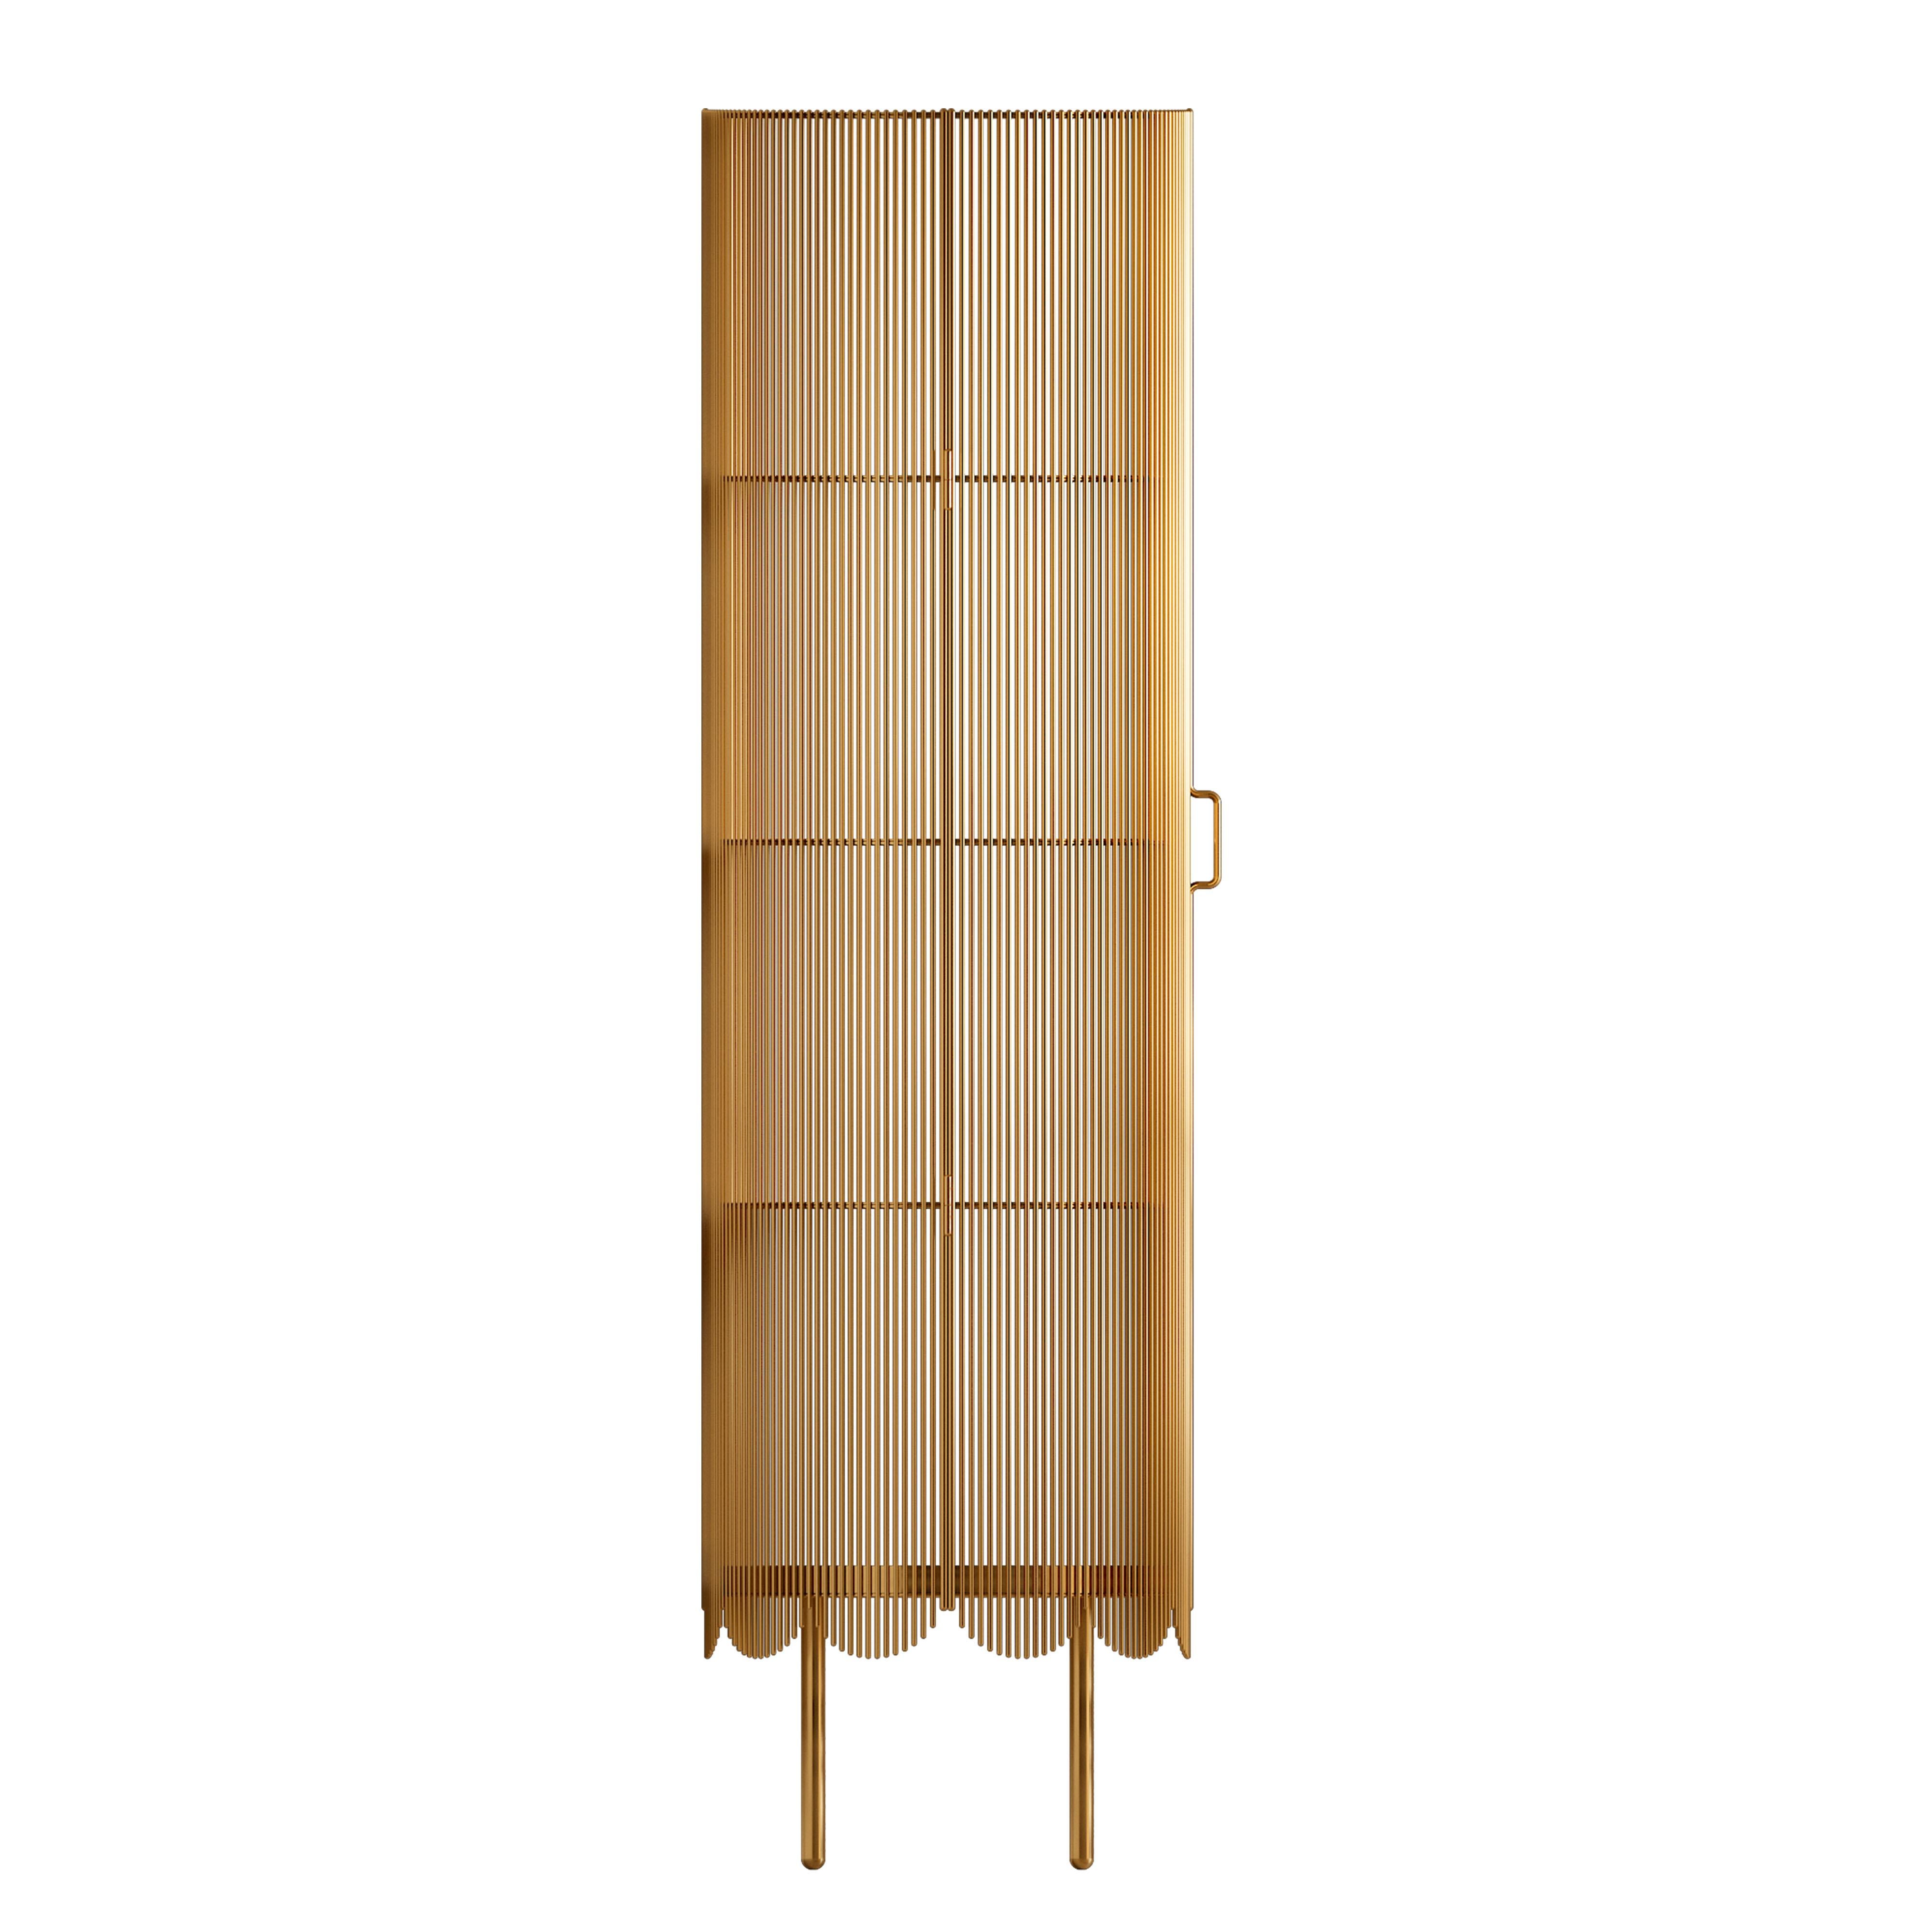 Le meuble de rangement Strings gold de NIKA ZUPANC est un meuble métallique haut composé de plusieurs 